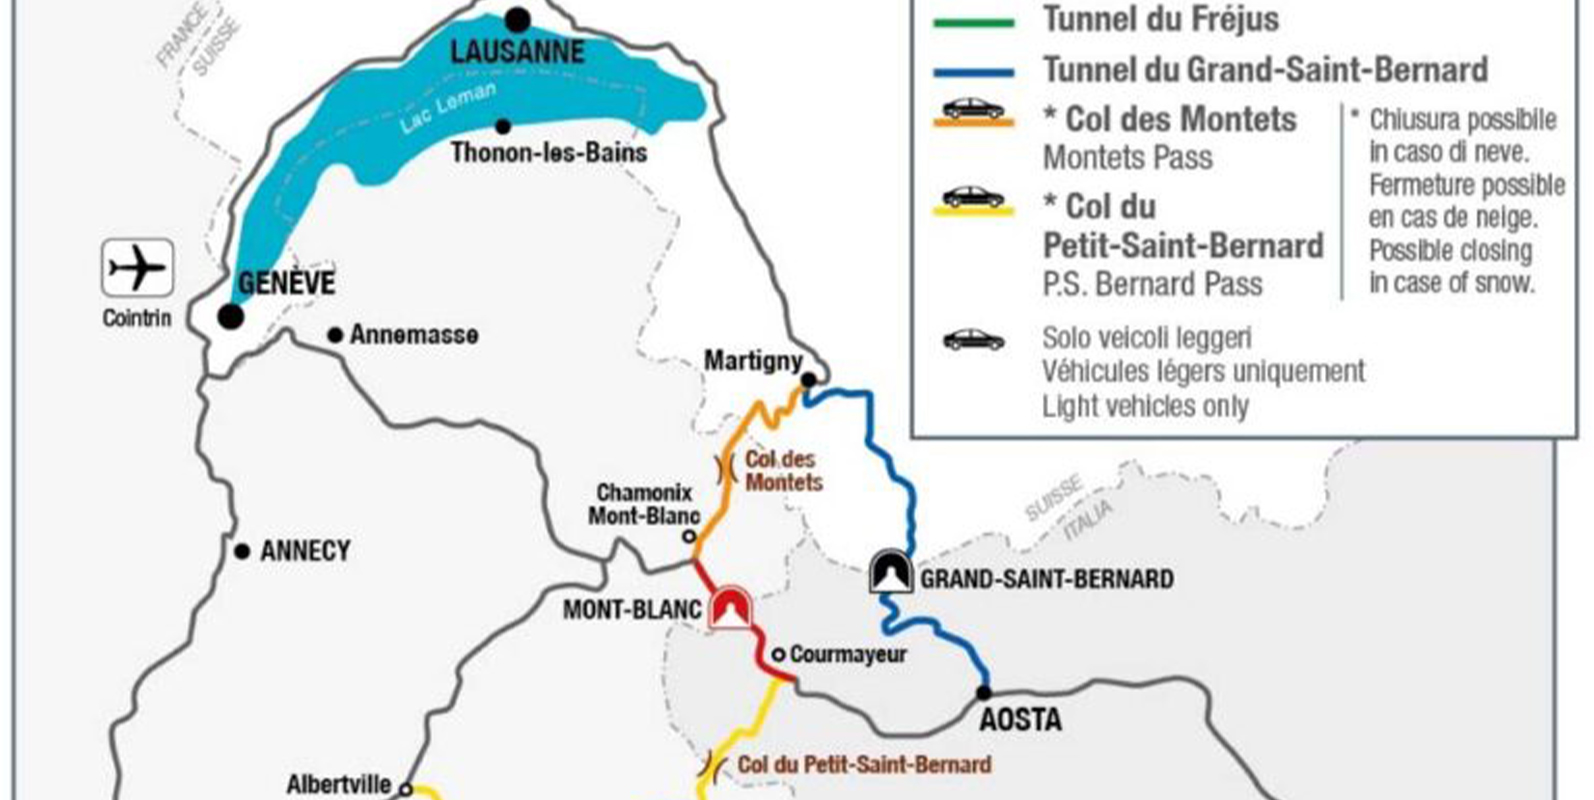 fermeture totale du tunnel du Mont-Blanc du 16 octobre au lundi 18 décembre 2023 pour tavaux